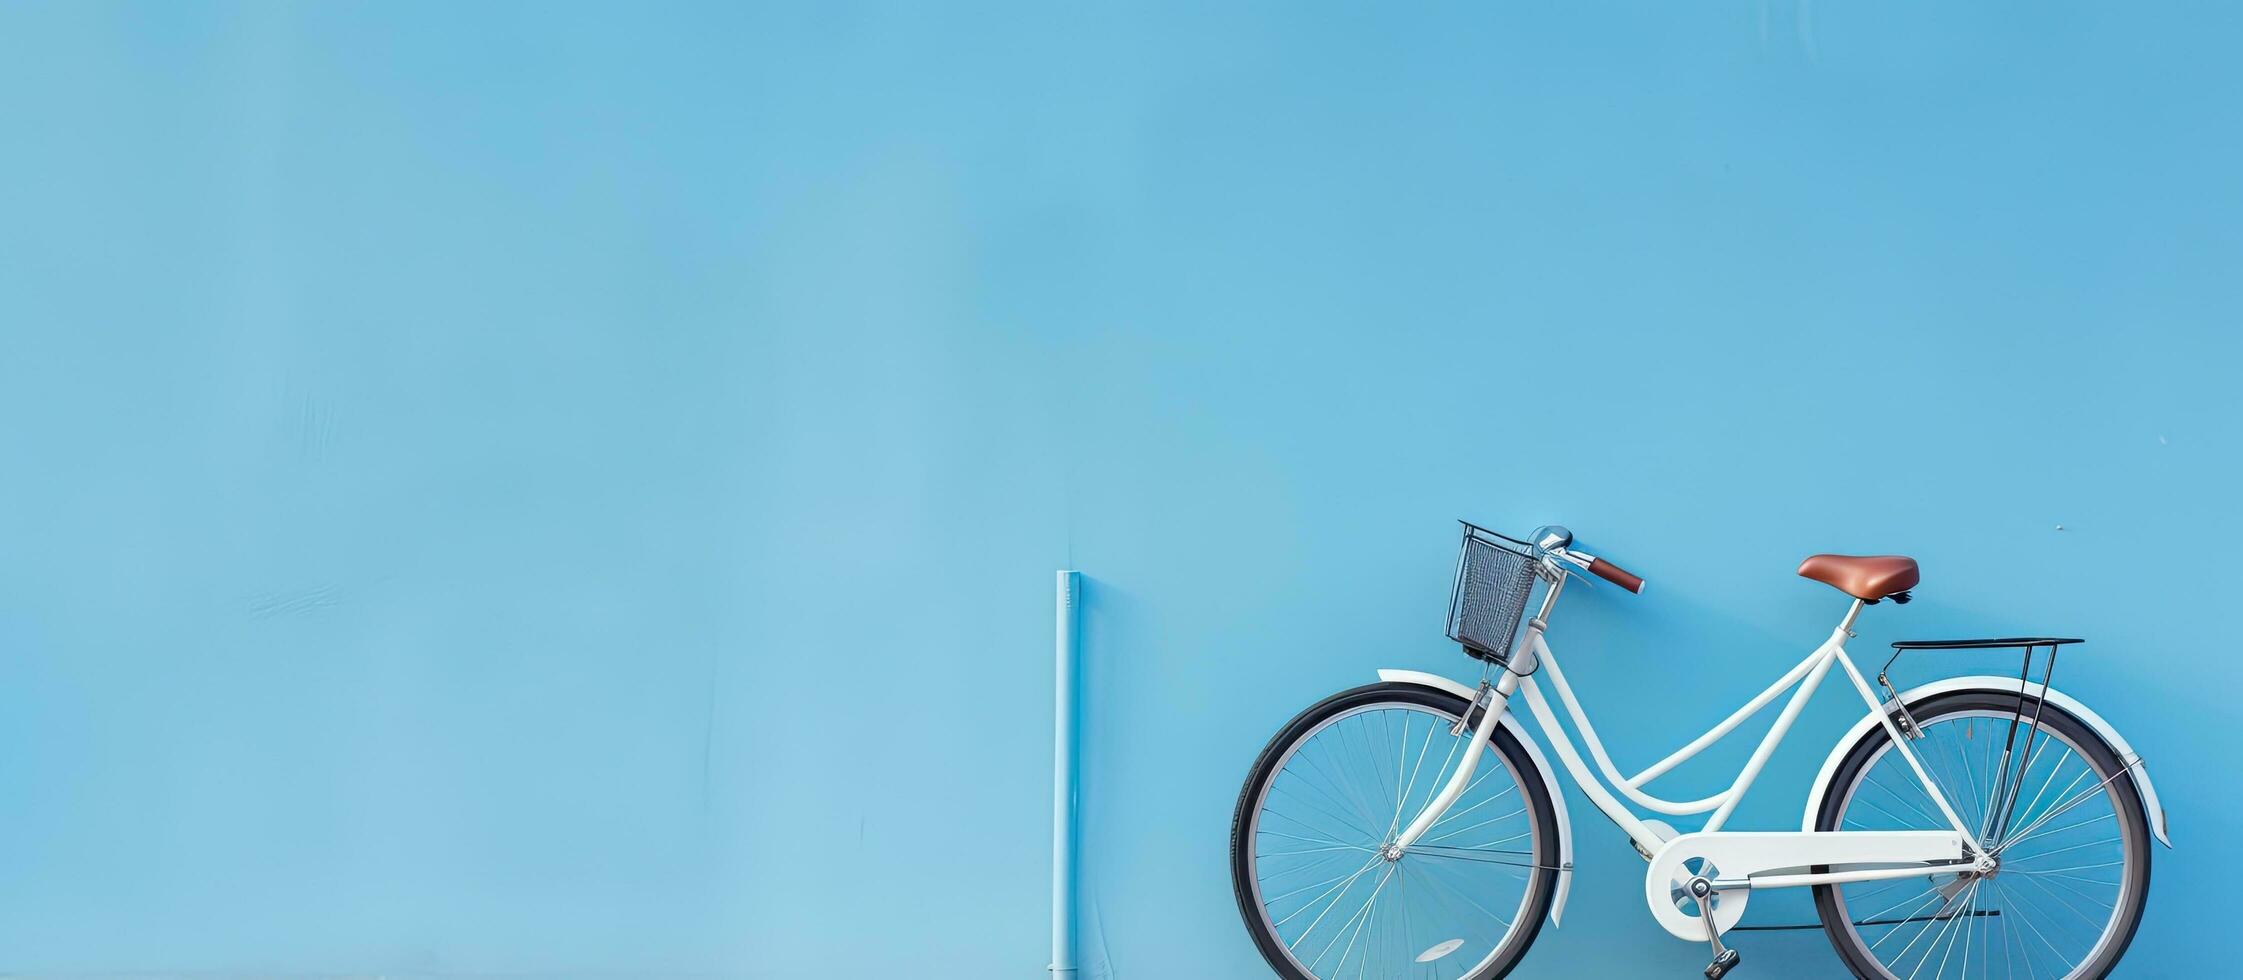 un alta calidad foto de un bicicleta es posicionado en contra un azul muro, con vacío espacio disponible